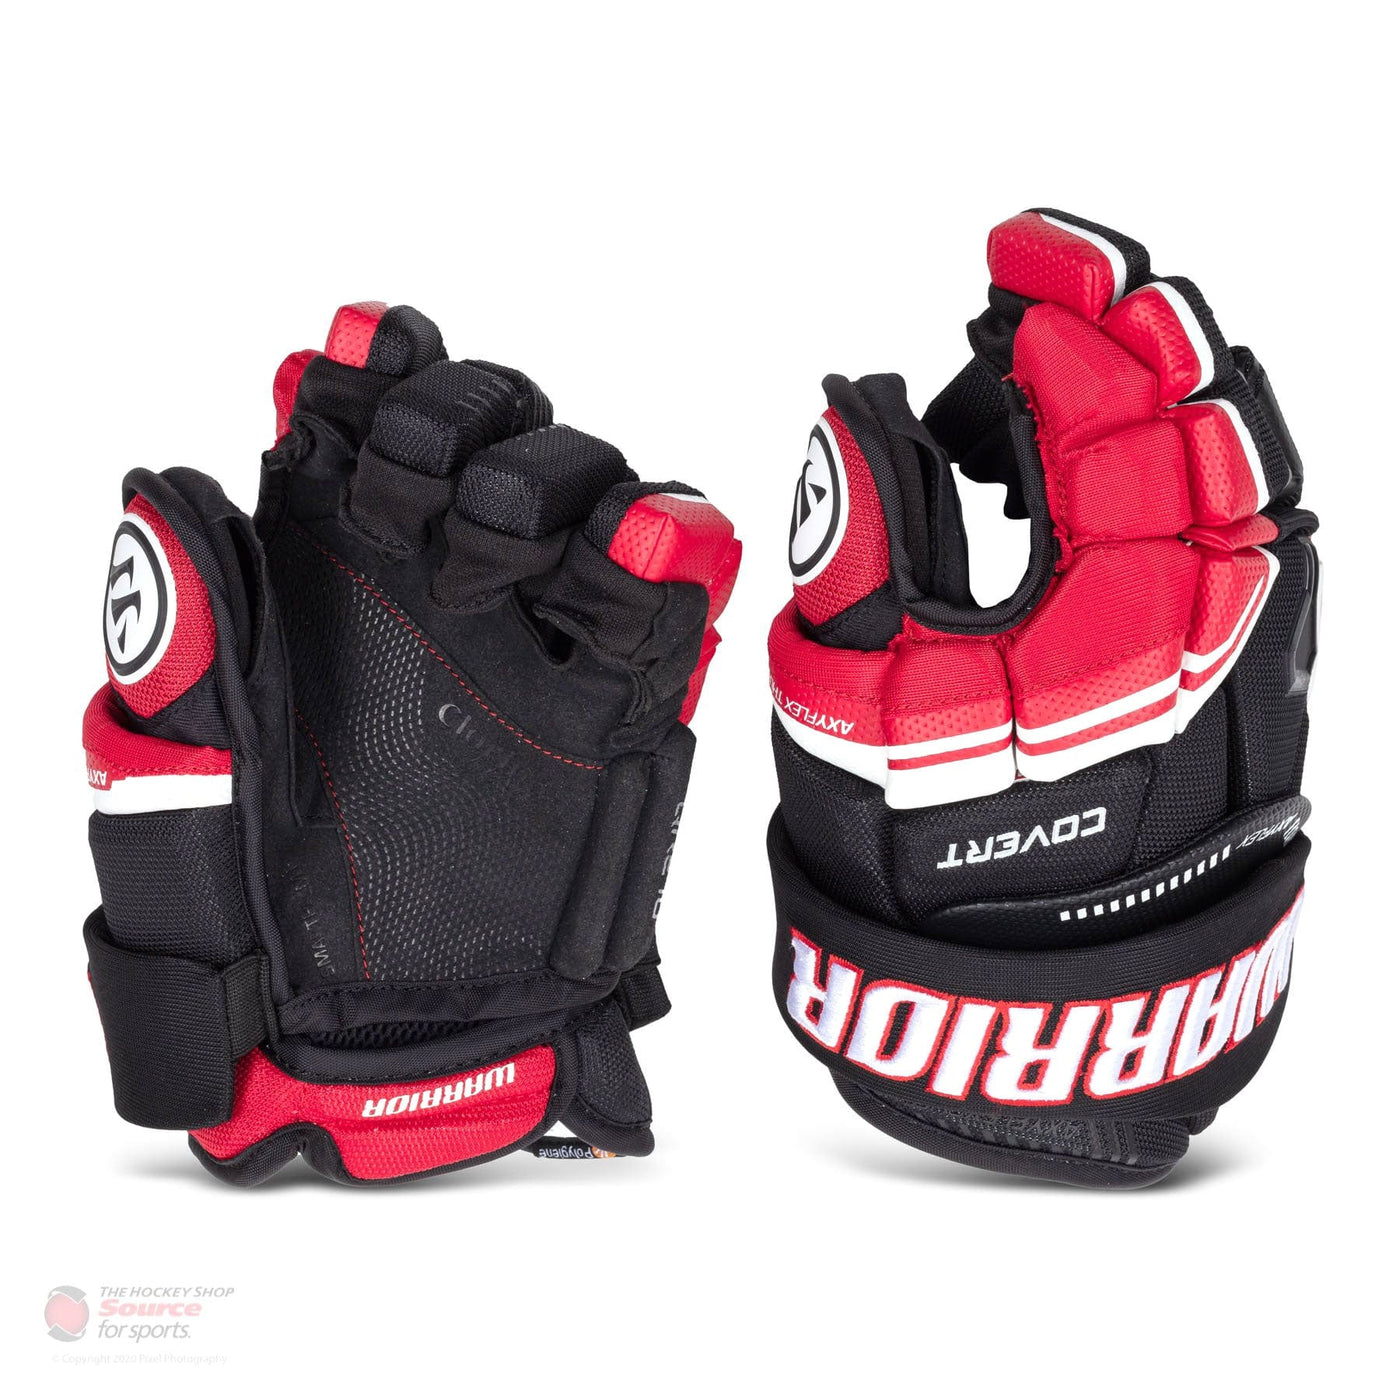 Warrior Covert QRE 10 Senior Hockey Gloves